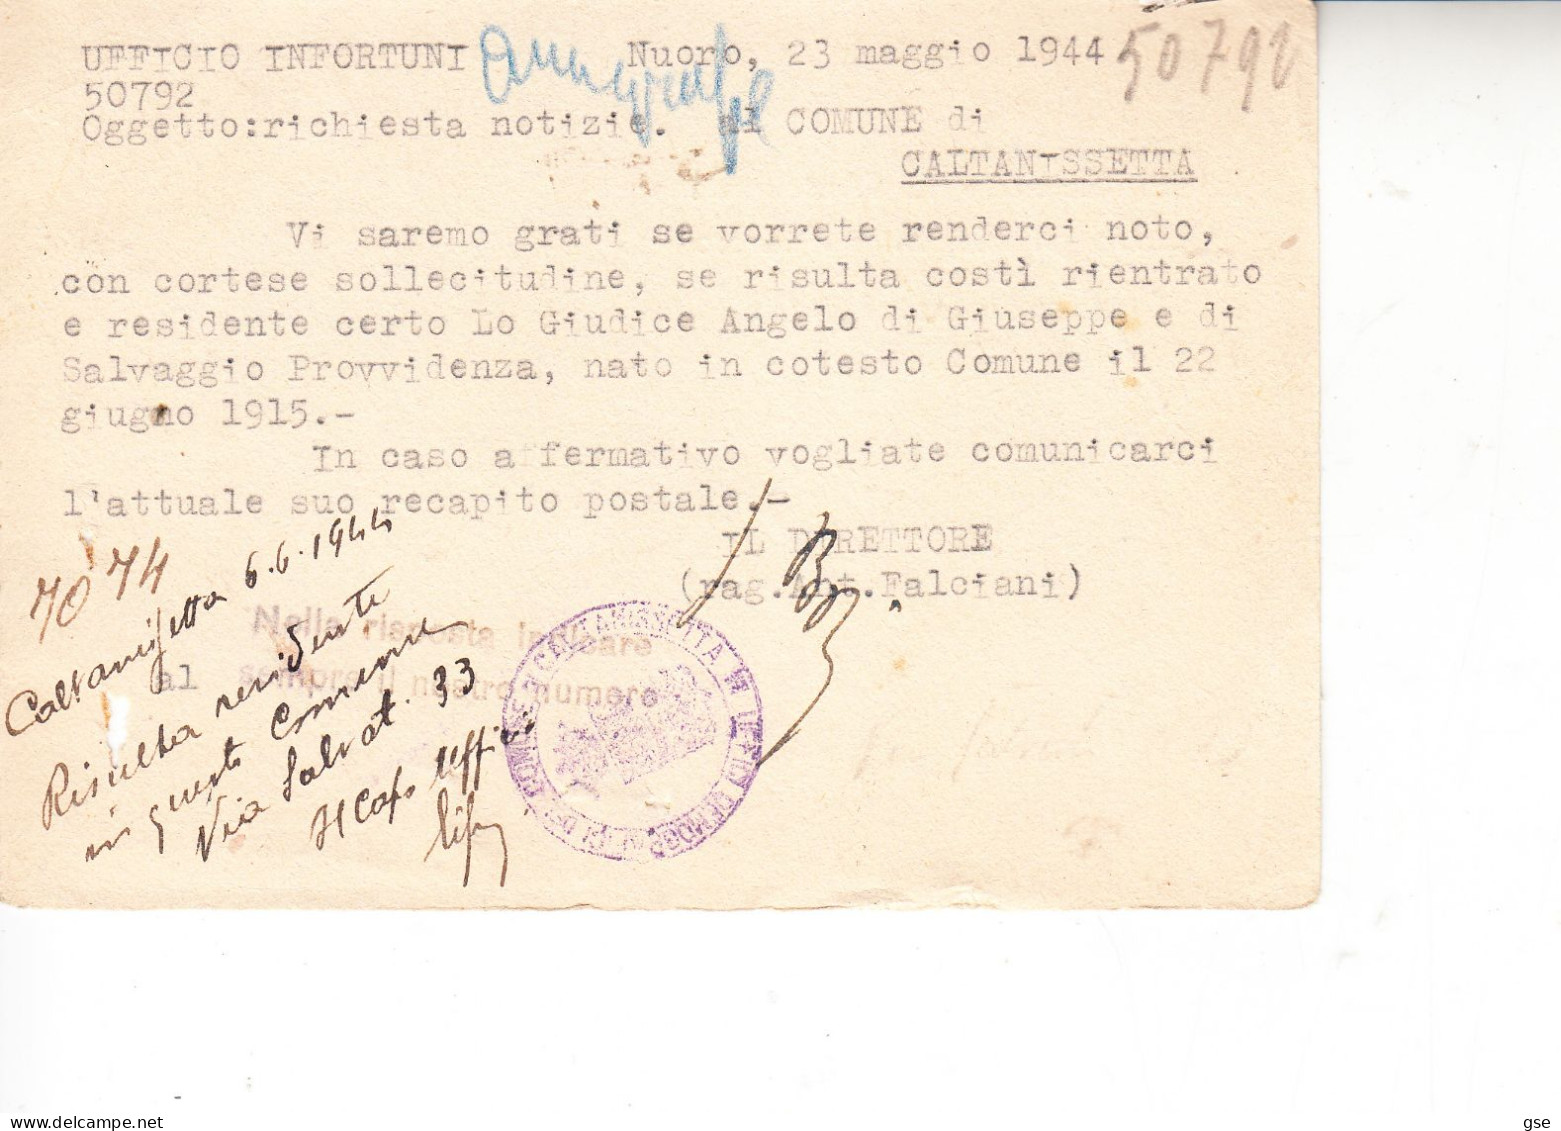 ITALIA 1944 - Cartolina "Istituto Nazionale Assicurazione..." ACS" Da Nuoro A Caltanissetta E Rispedita - Marcophilia